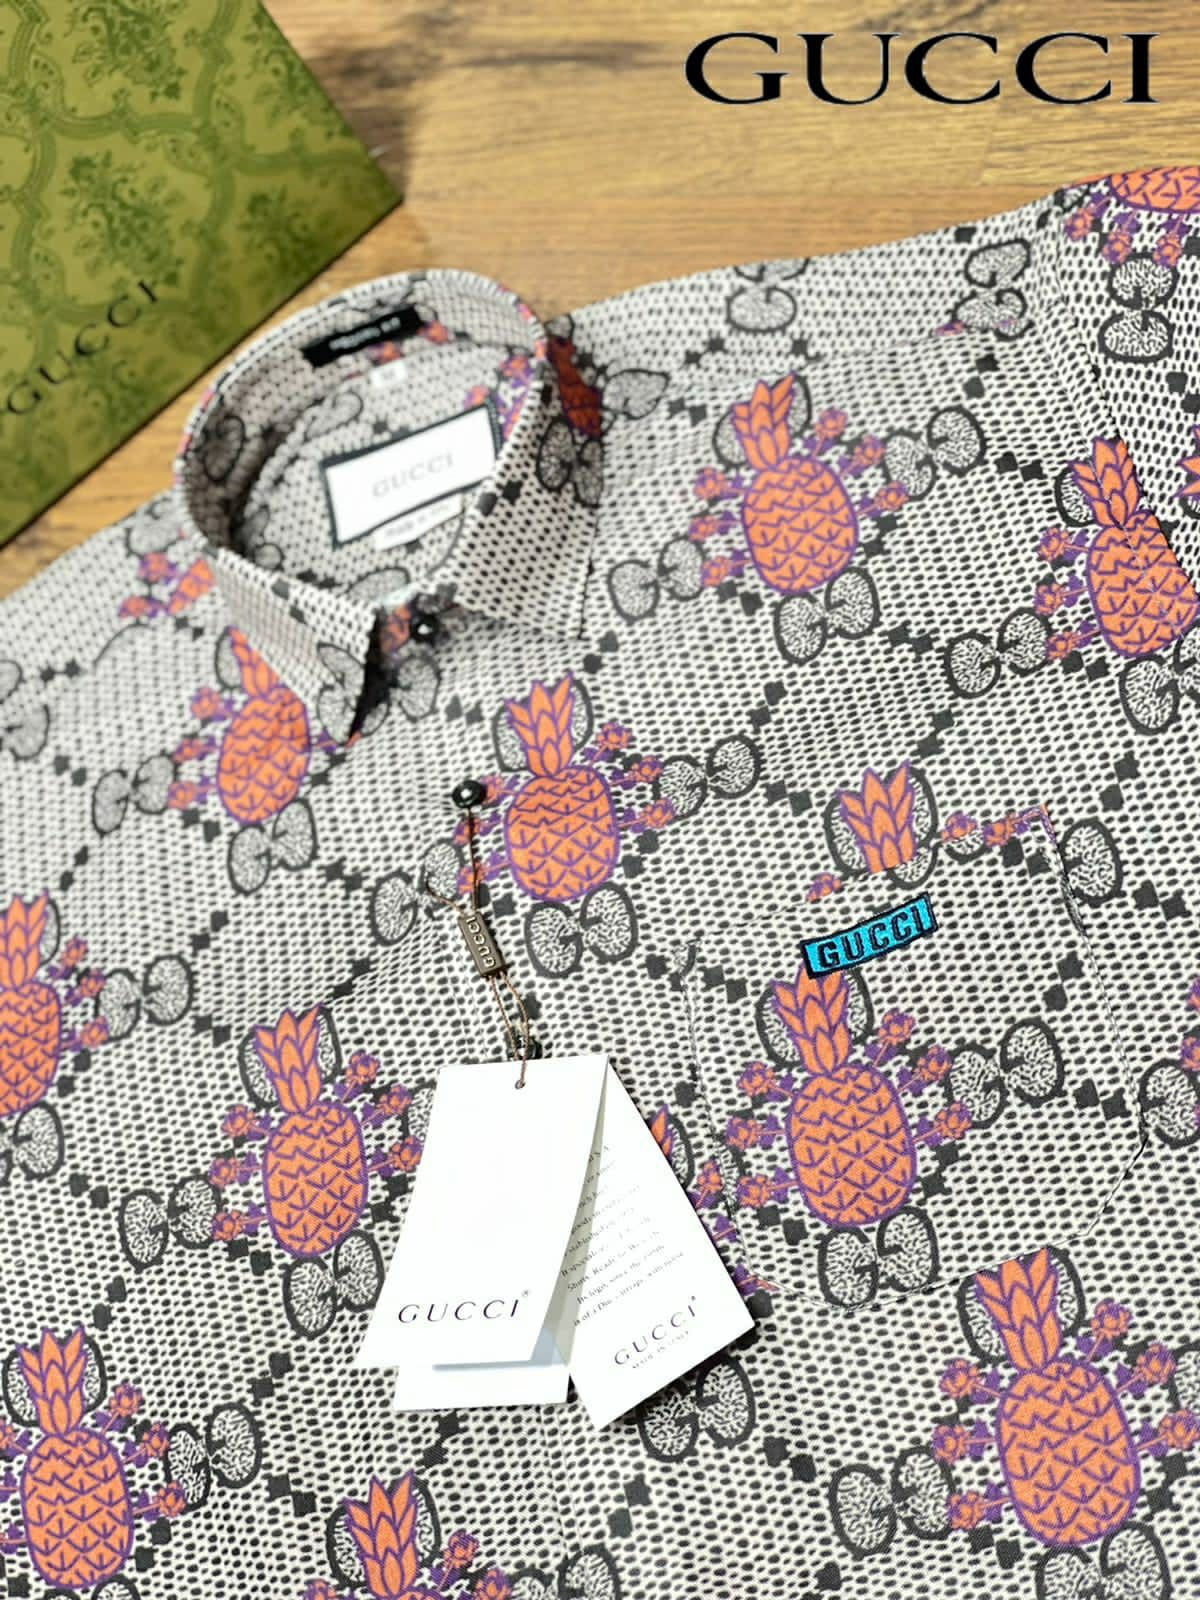 Premium Cotton Fabric Shirt For Men